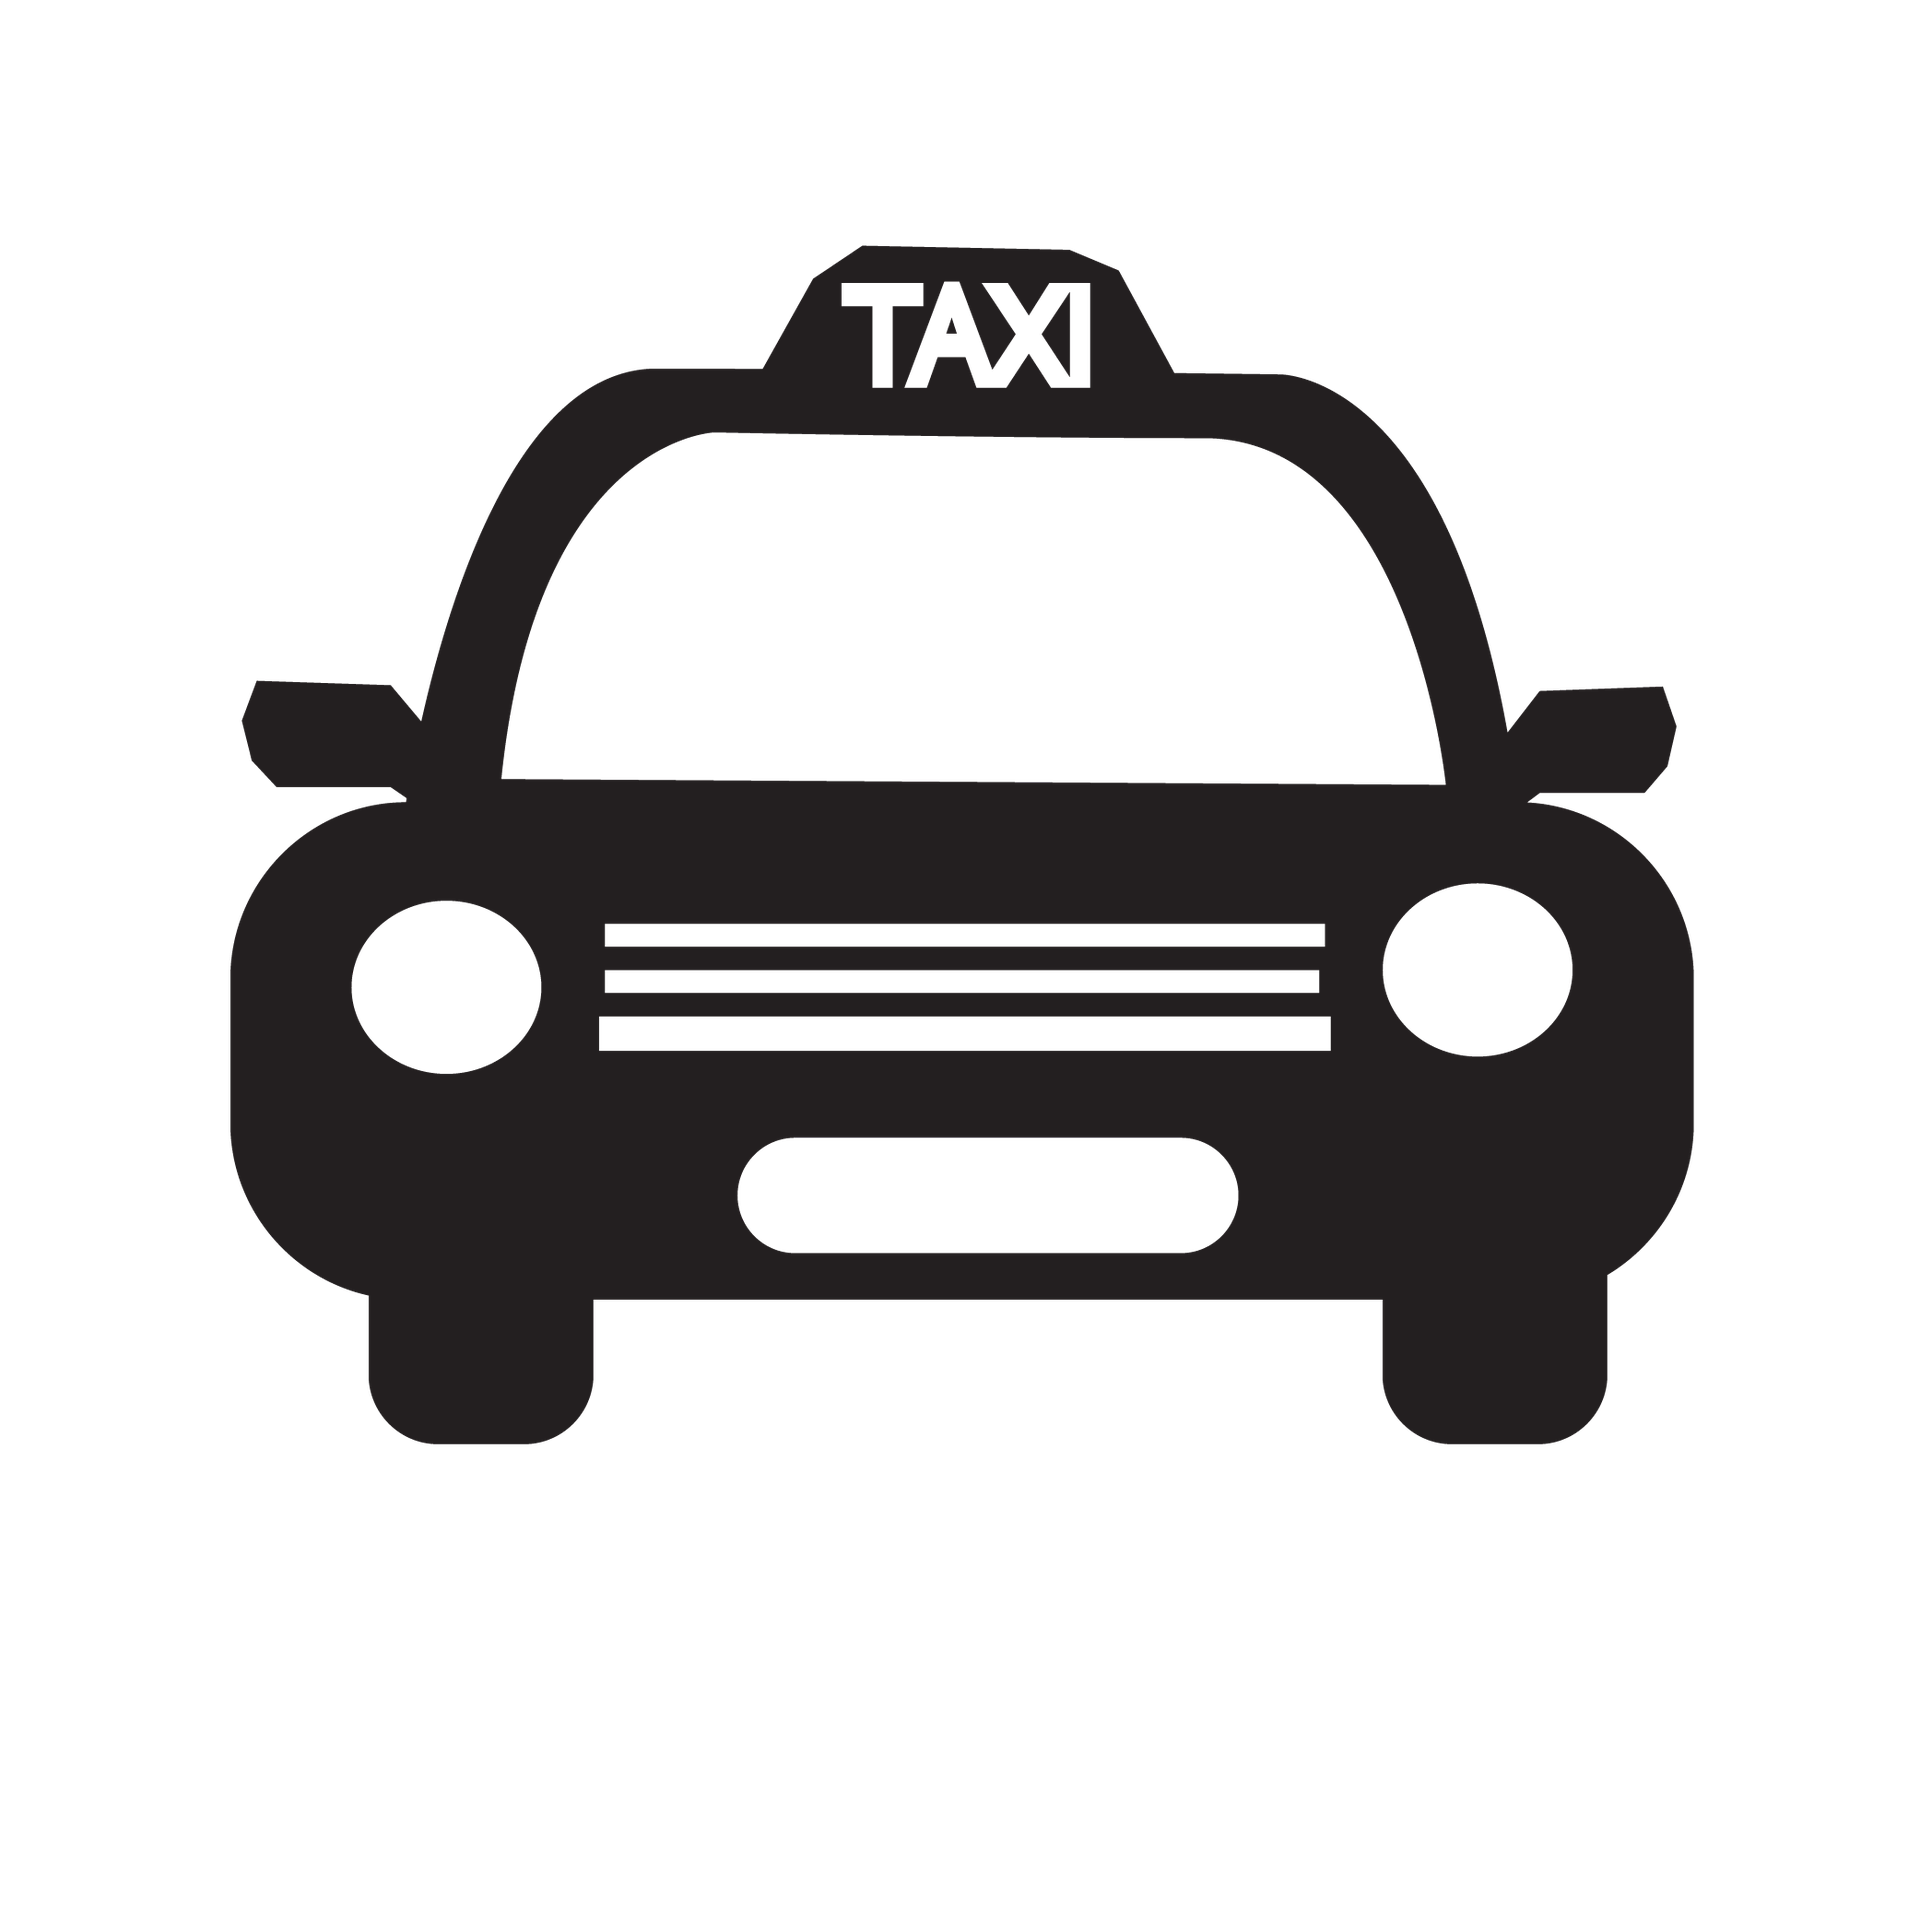 taxi-icon-602136_1920